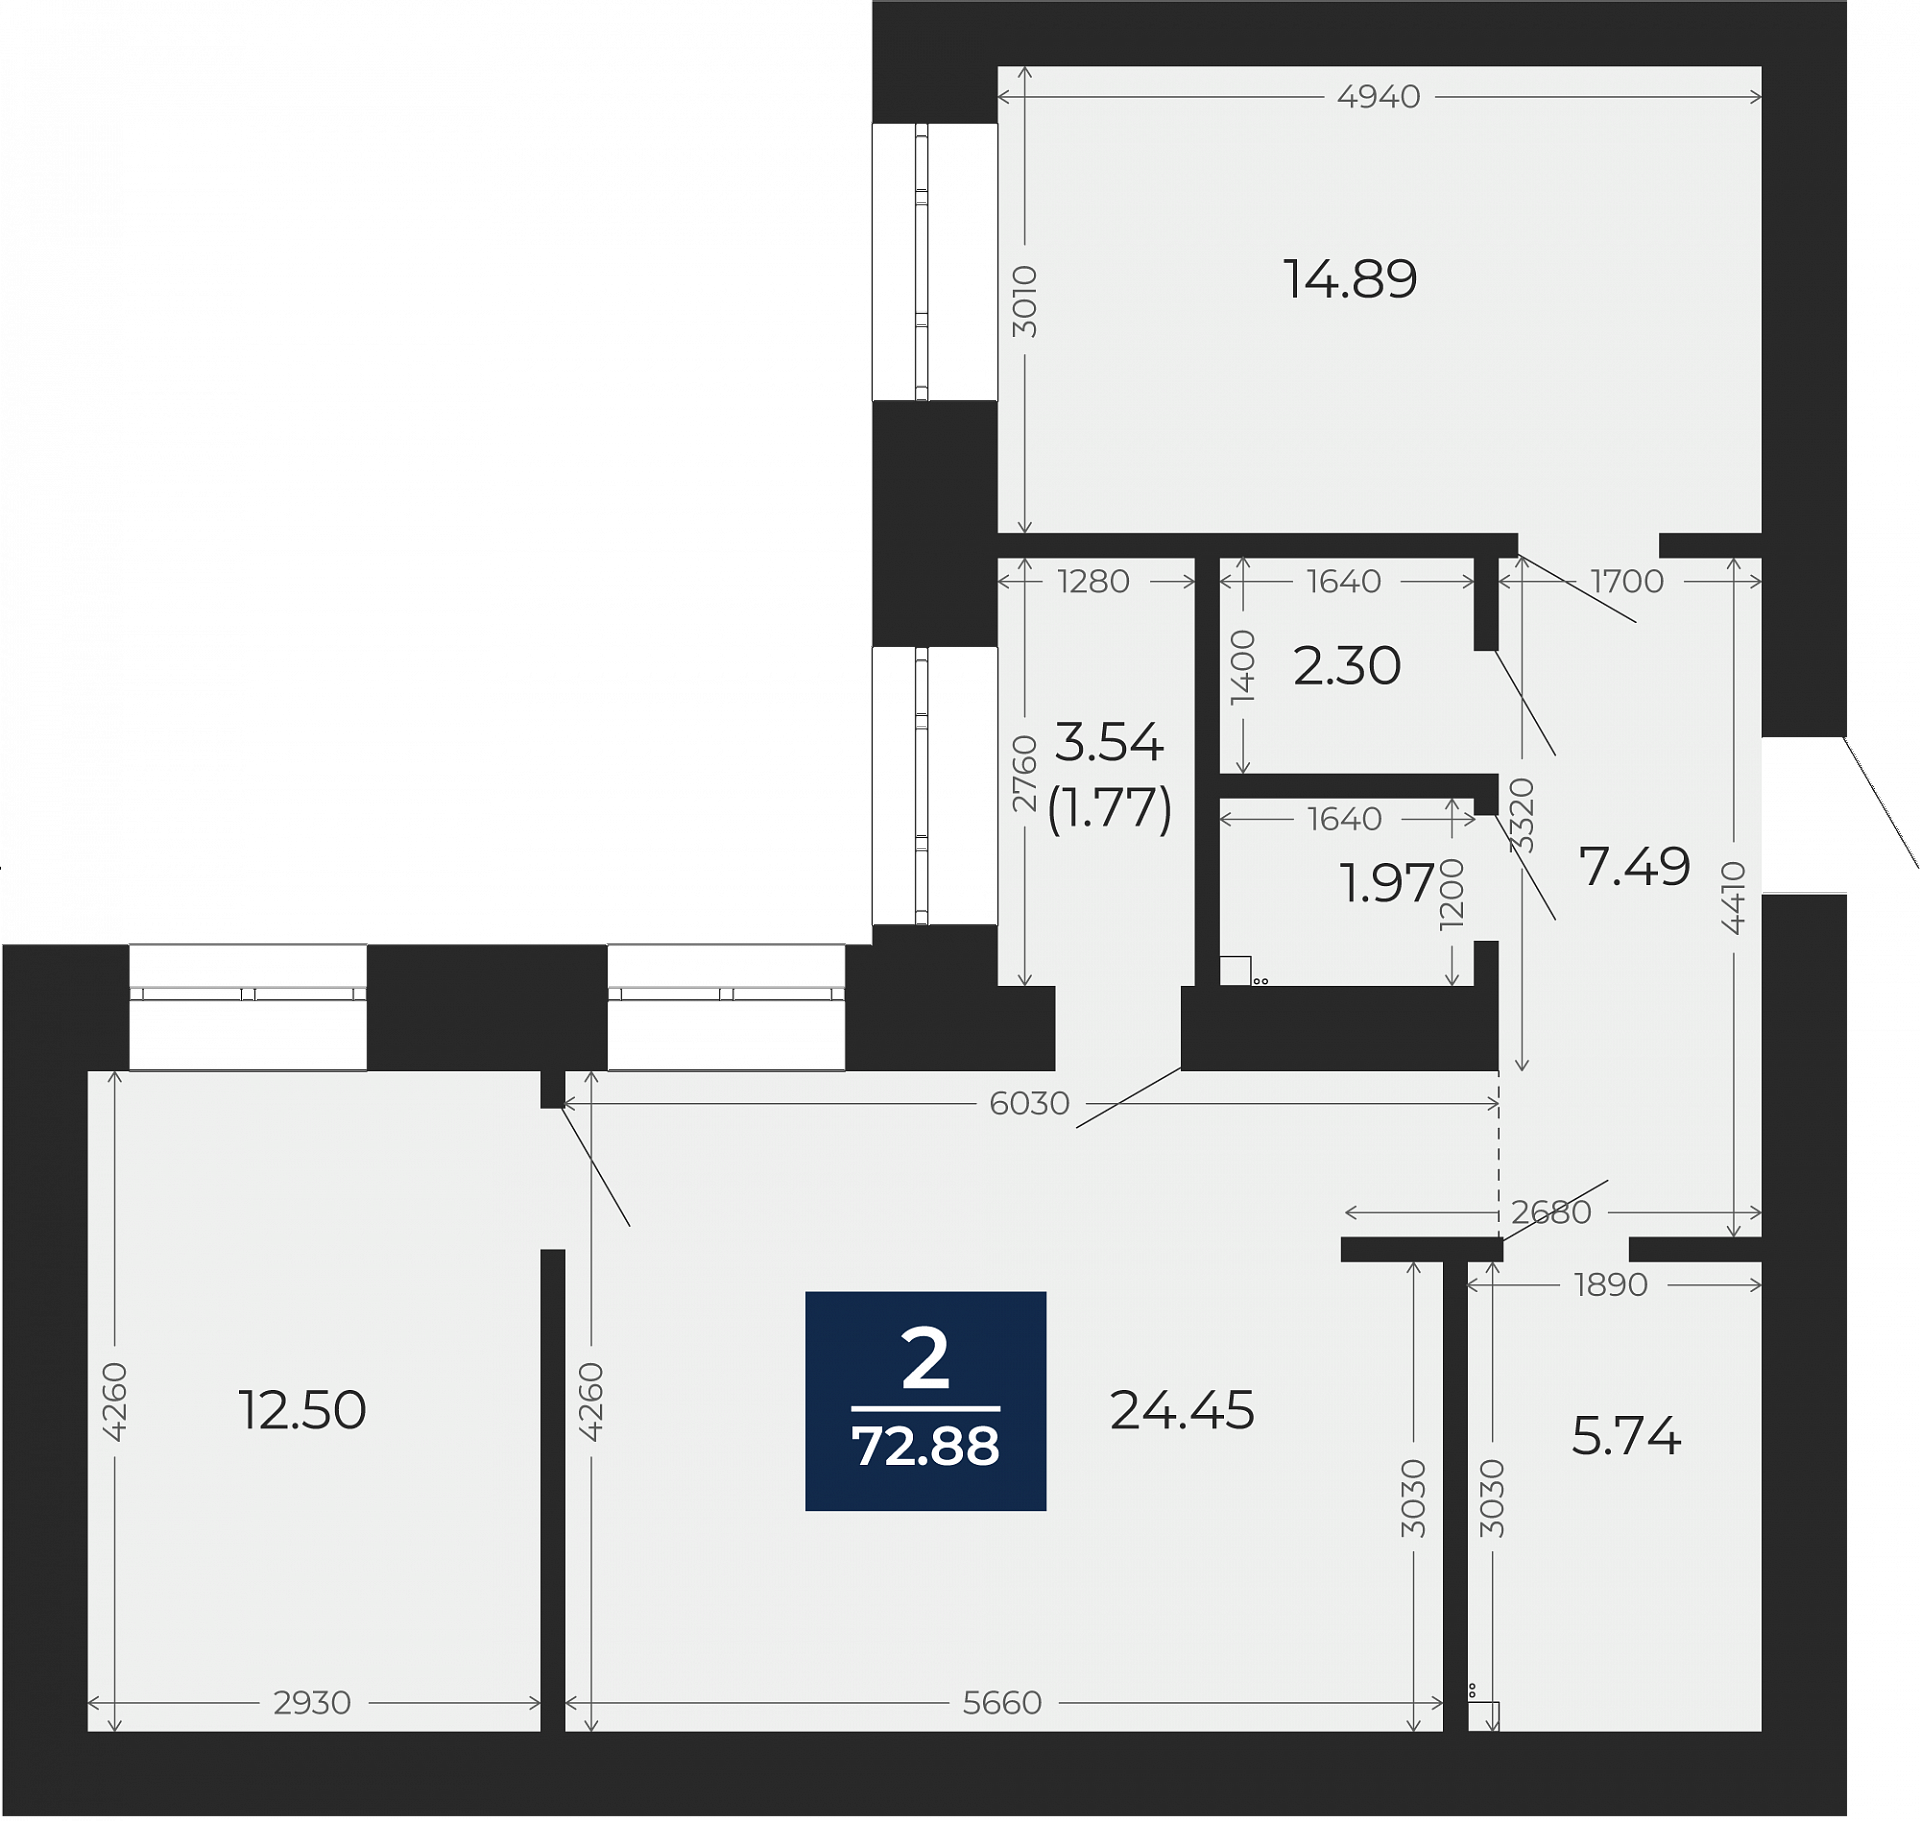 Квартира № 132, 2-комнатная, 72.88 кв. м, 2 этаж